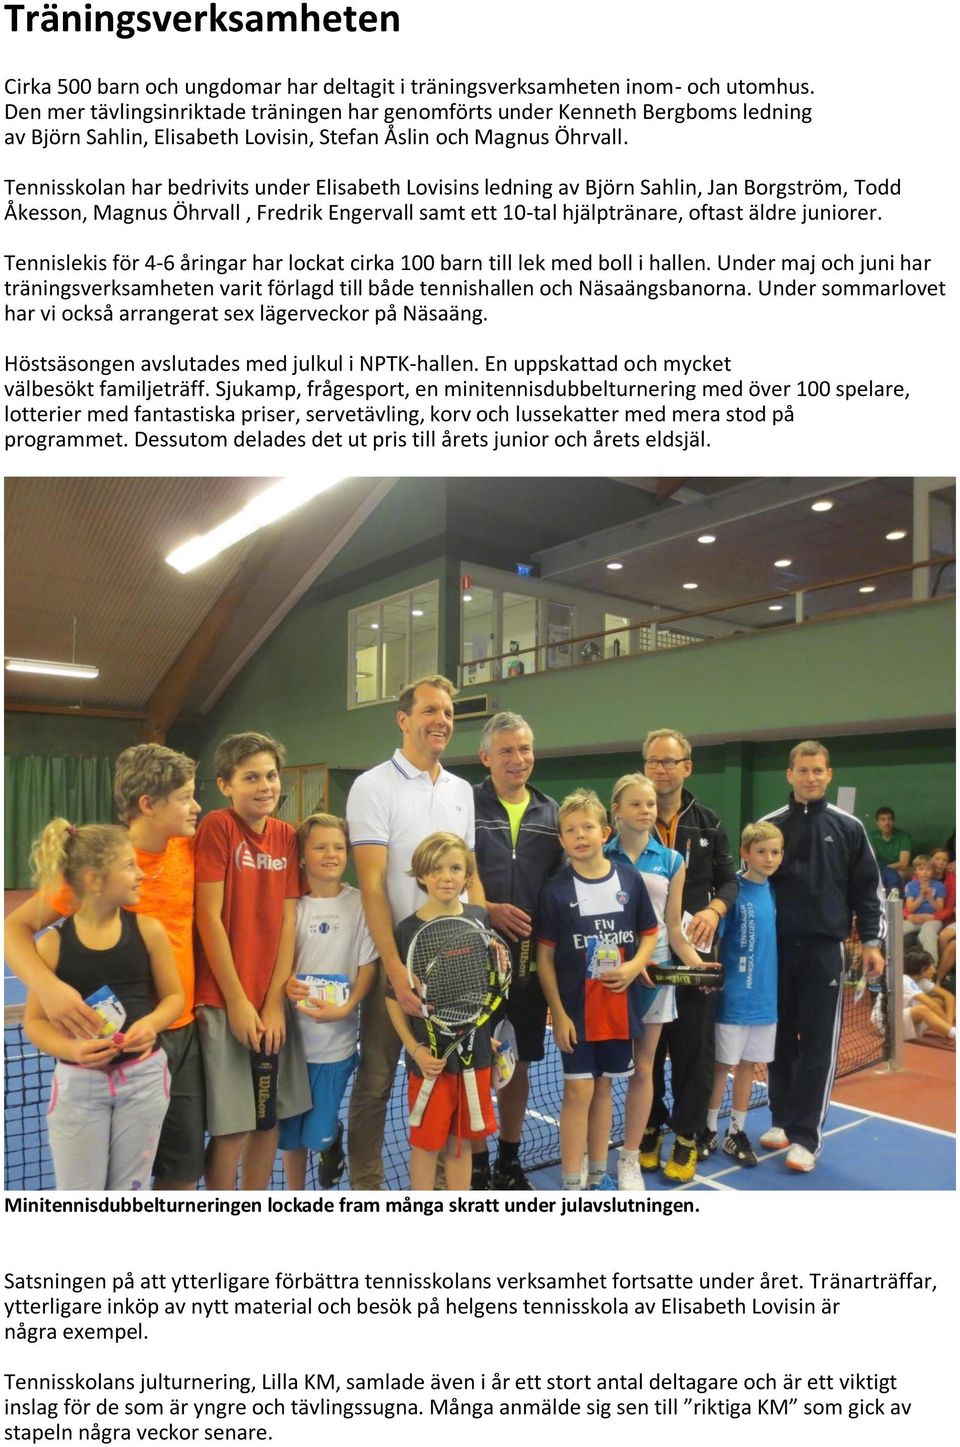 Tennisskolan har bedrivits under Elisabeth Lovisins ledning av Björn Sahlin, Jan Borgström, Todd Åkesson, Magnus Öhrvall, Fredrik Engervall samt ett 10-tal hjälptränare, oftast äldre juniorer.